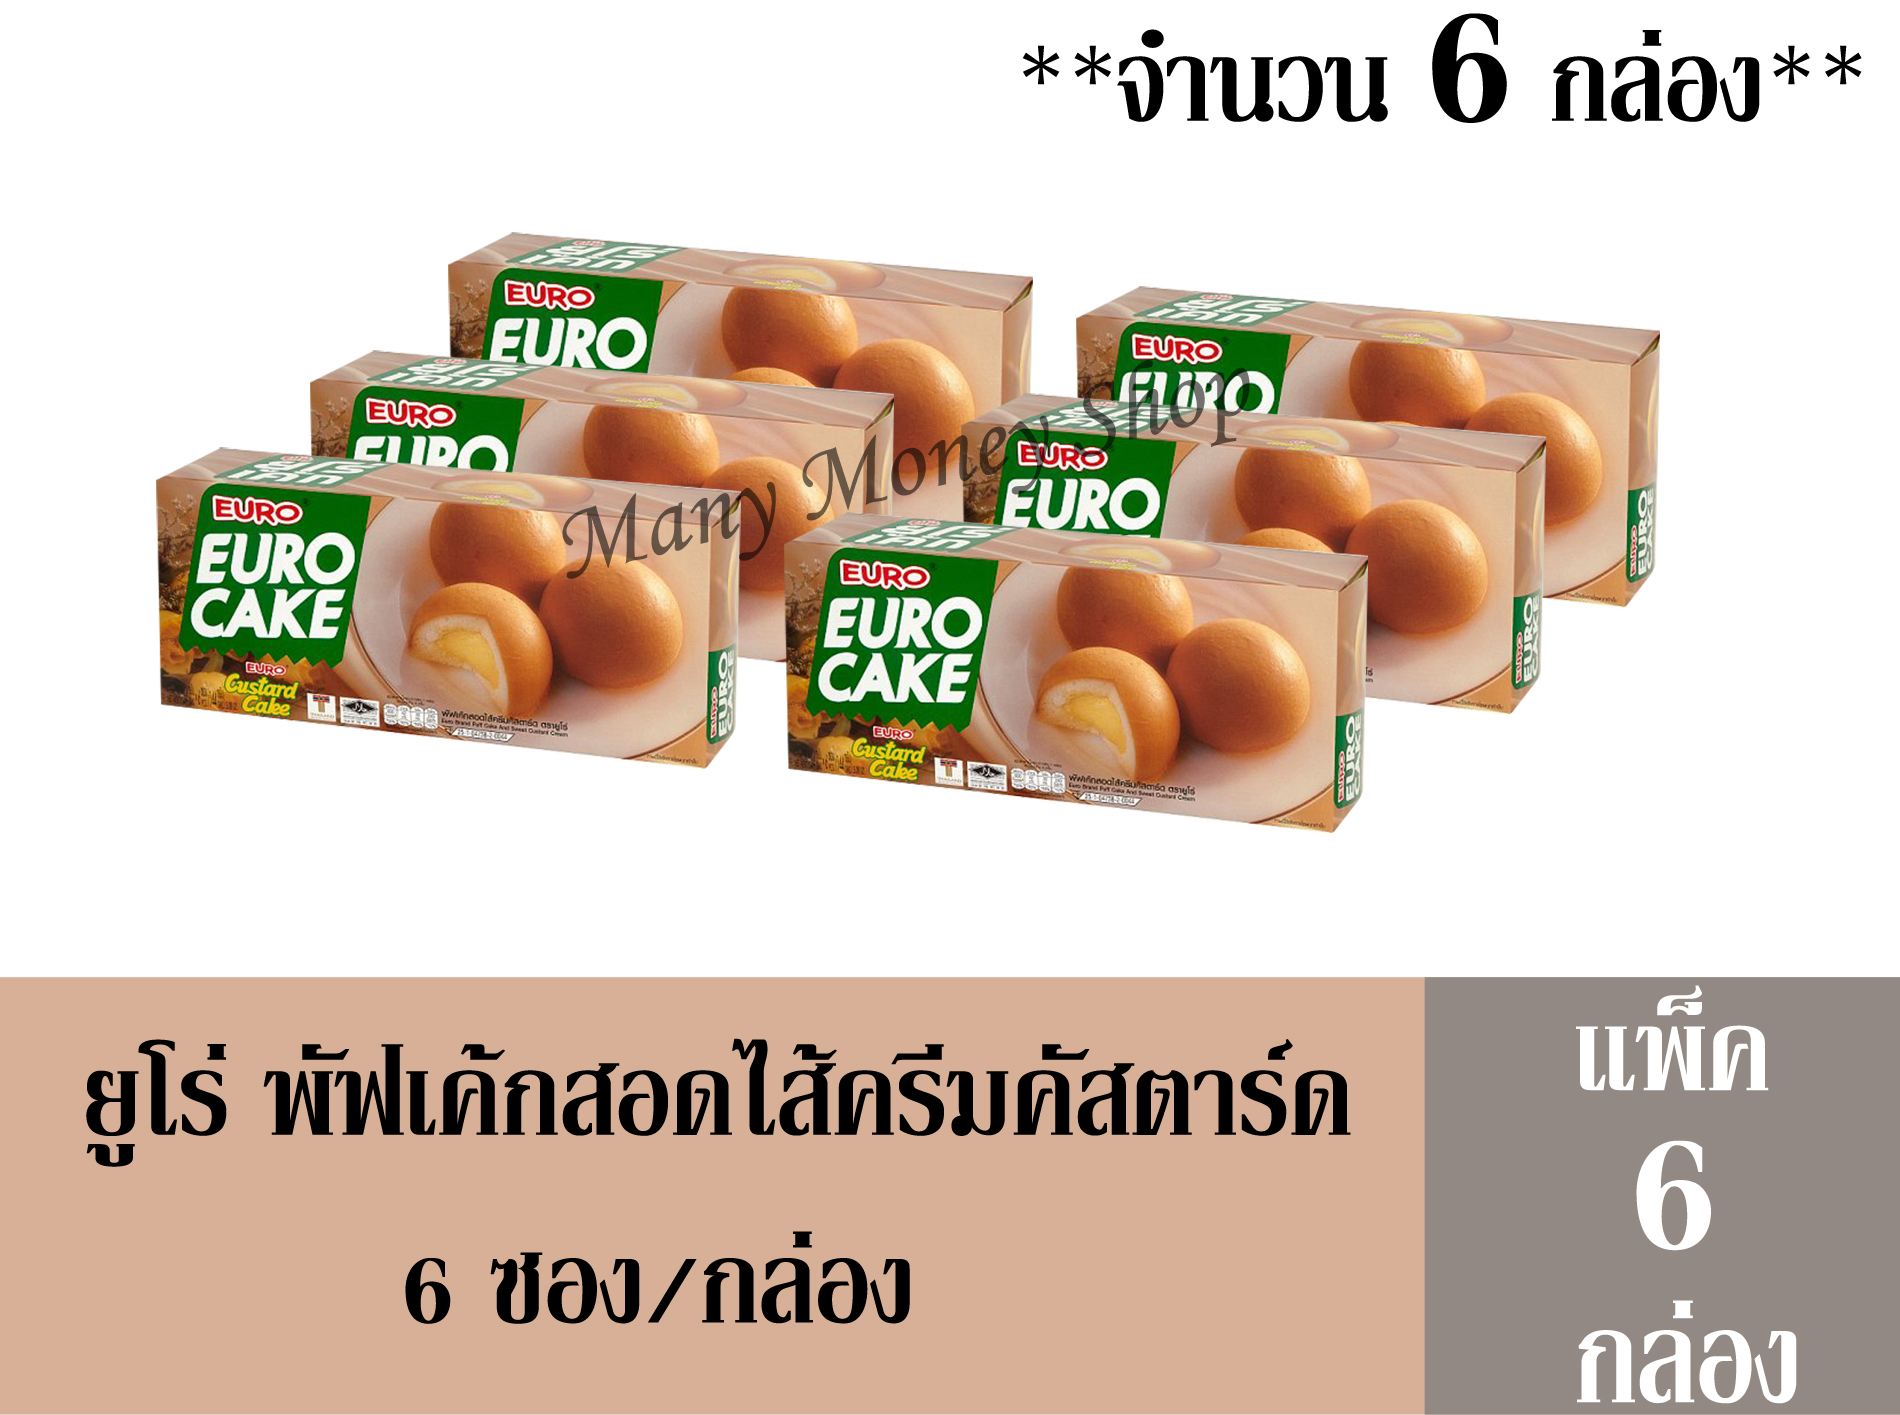 ยูโร่ (Euro) พัฟเค้กสอดไส้ครีมคัสตาร์ด 144 กรัม/กล่อง  (6 ซอง/กล่อง)  +++จำนวน 6 กล่อง+++